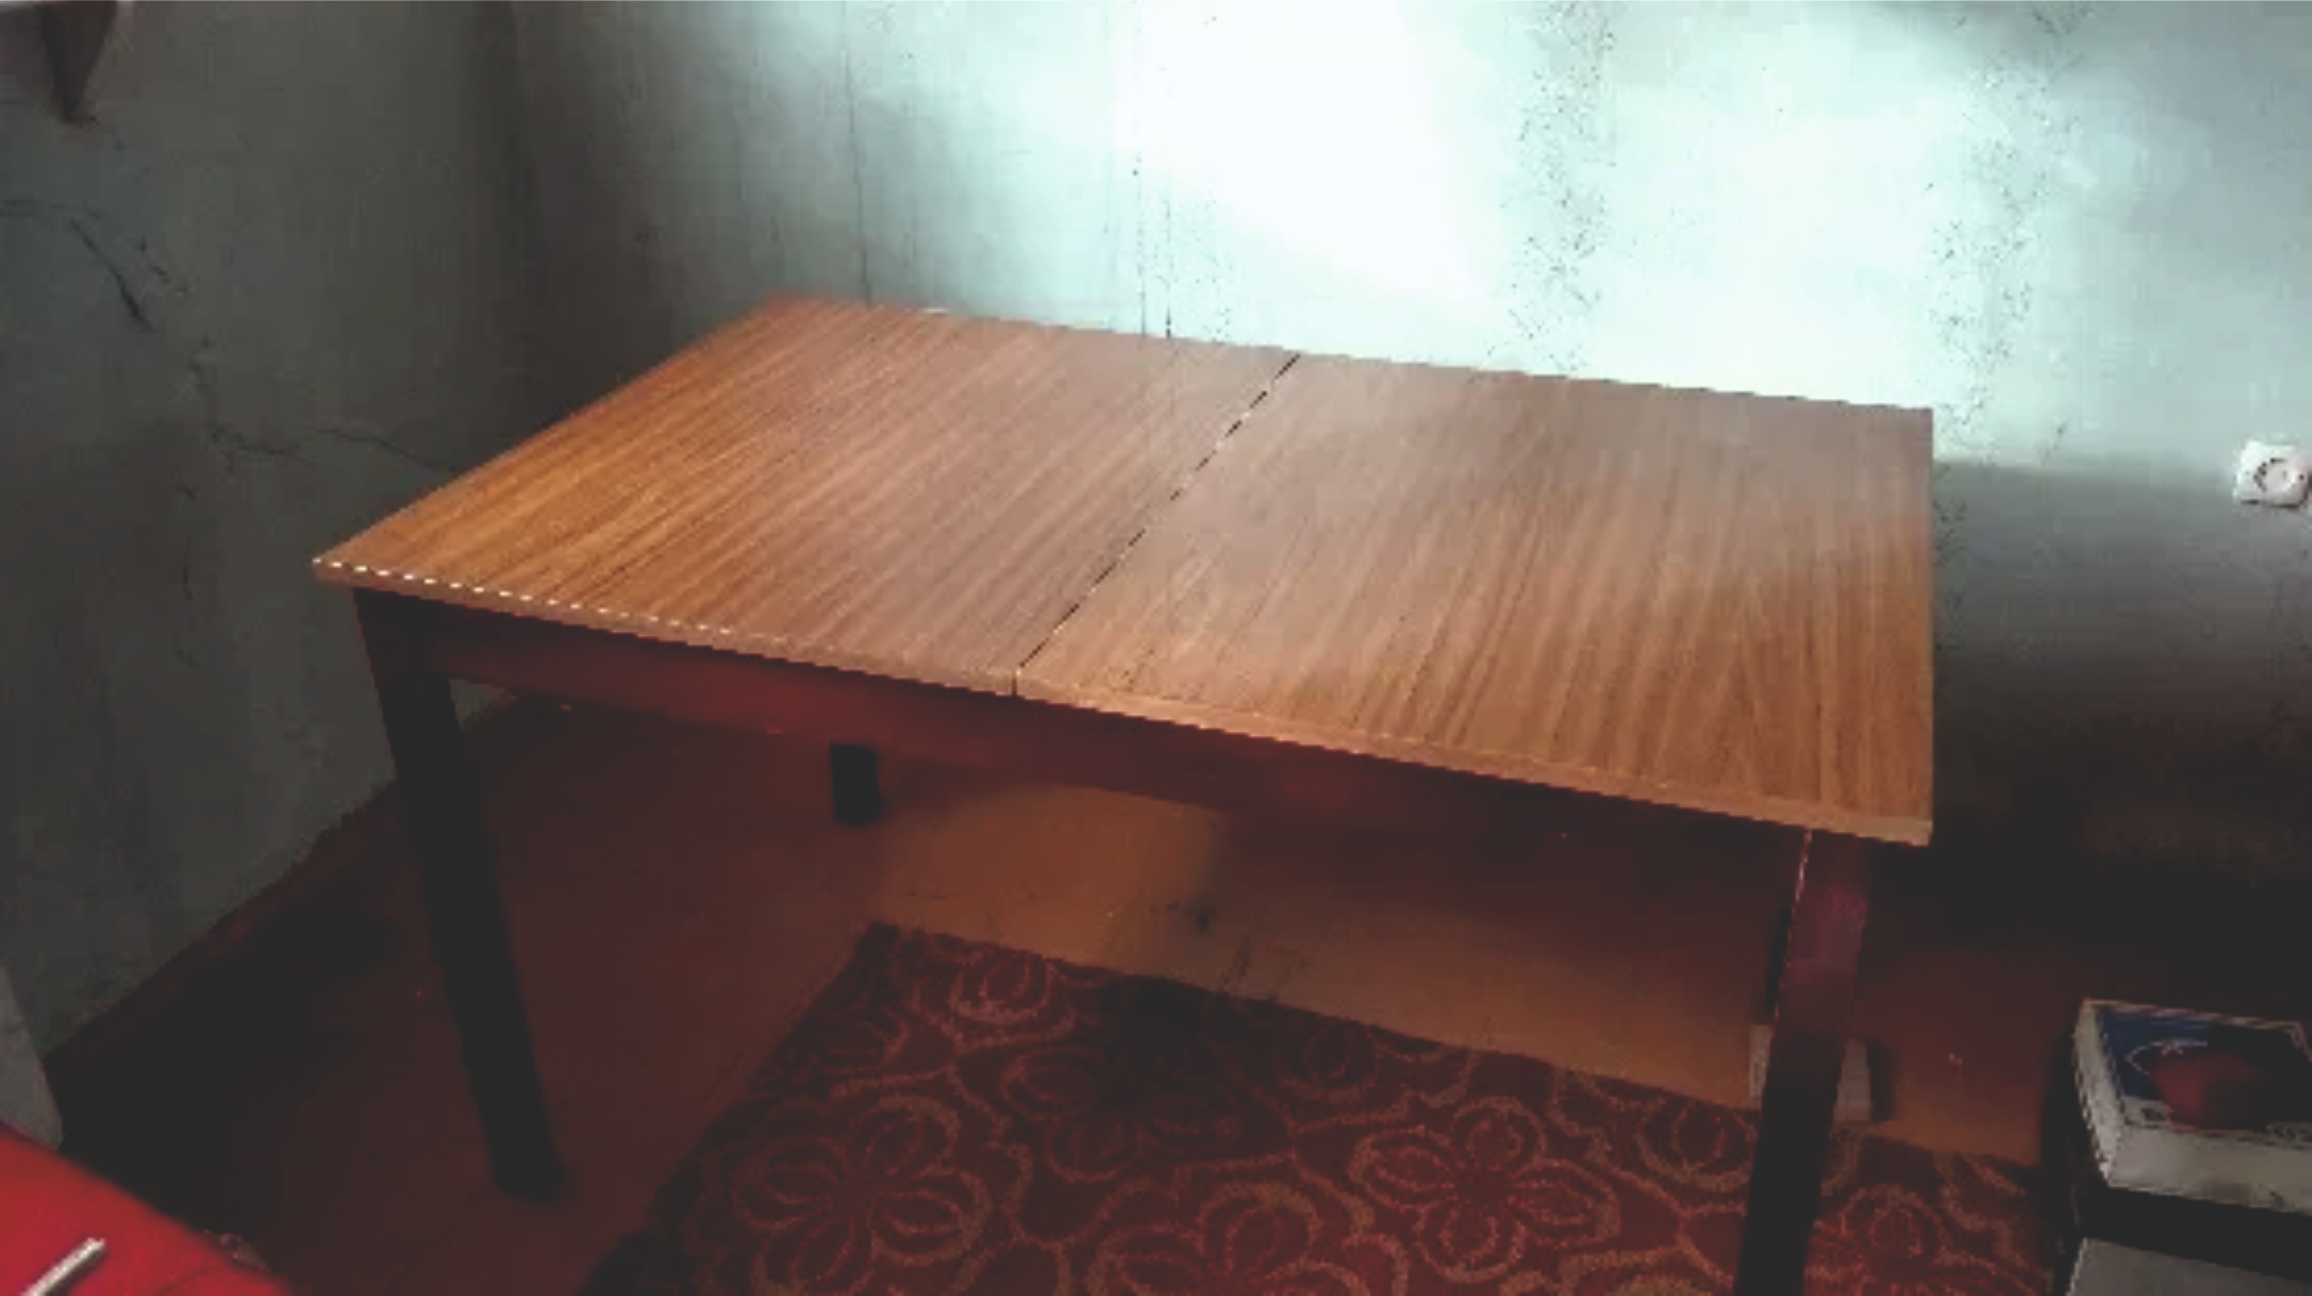 Rozkładany stół do jadalni z krzesłami